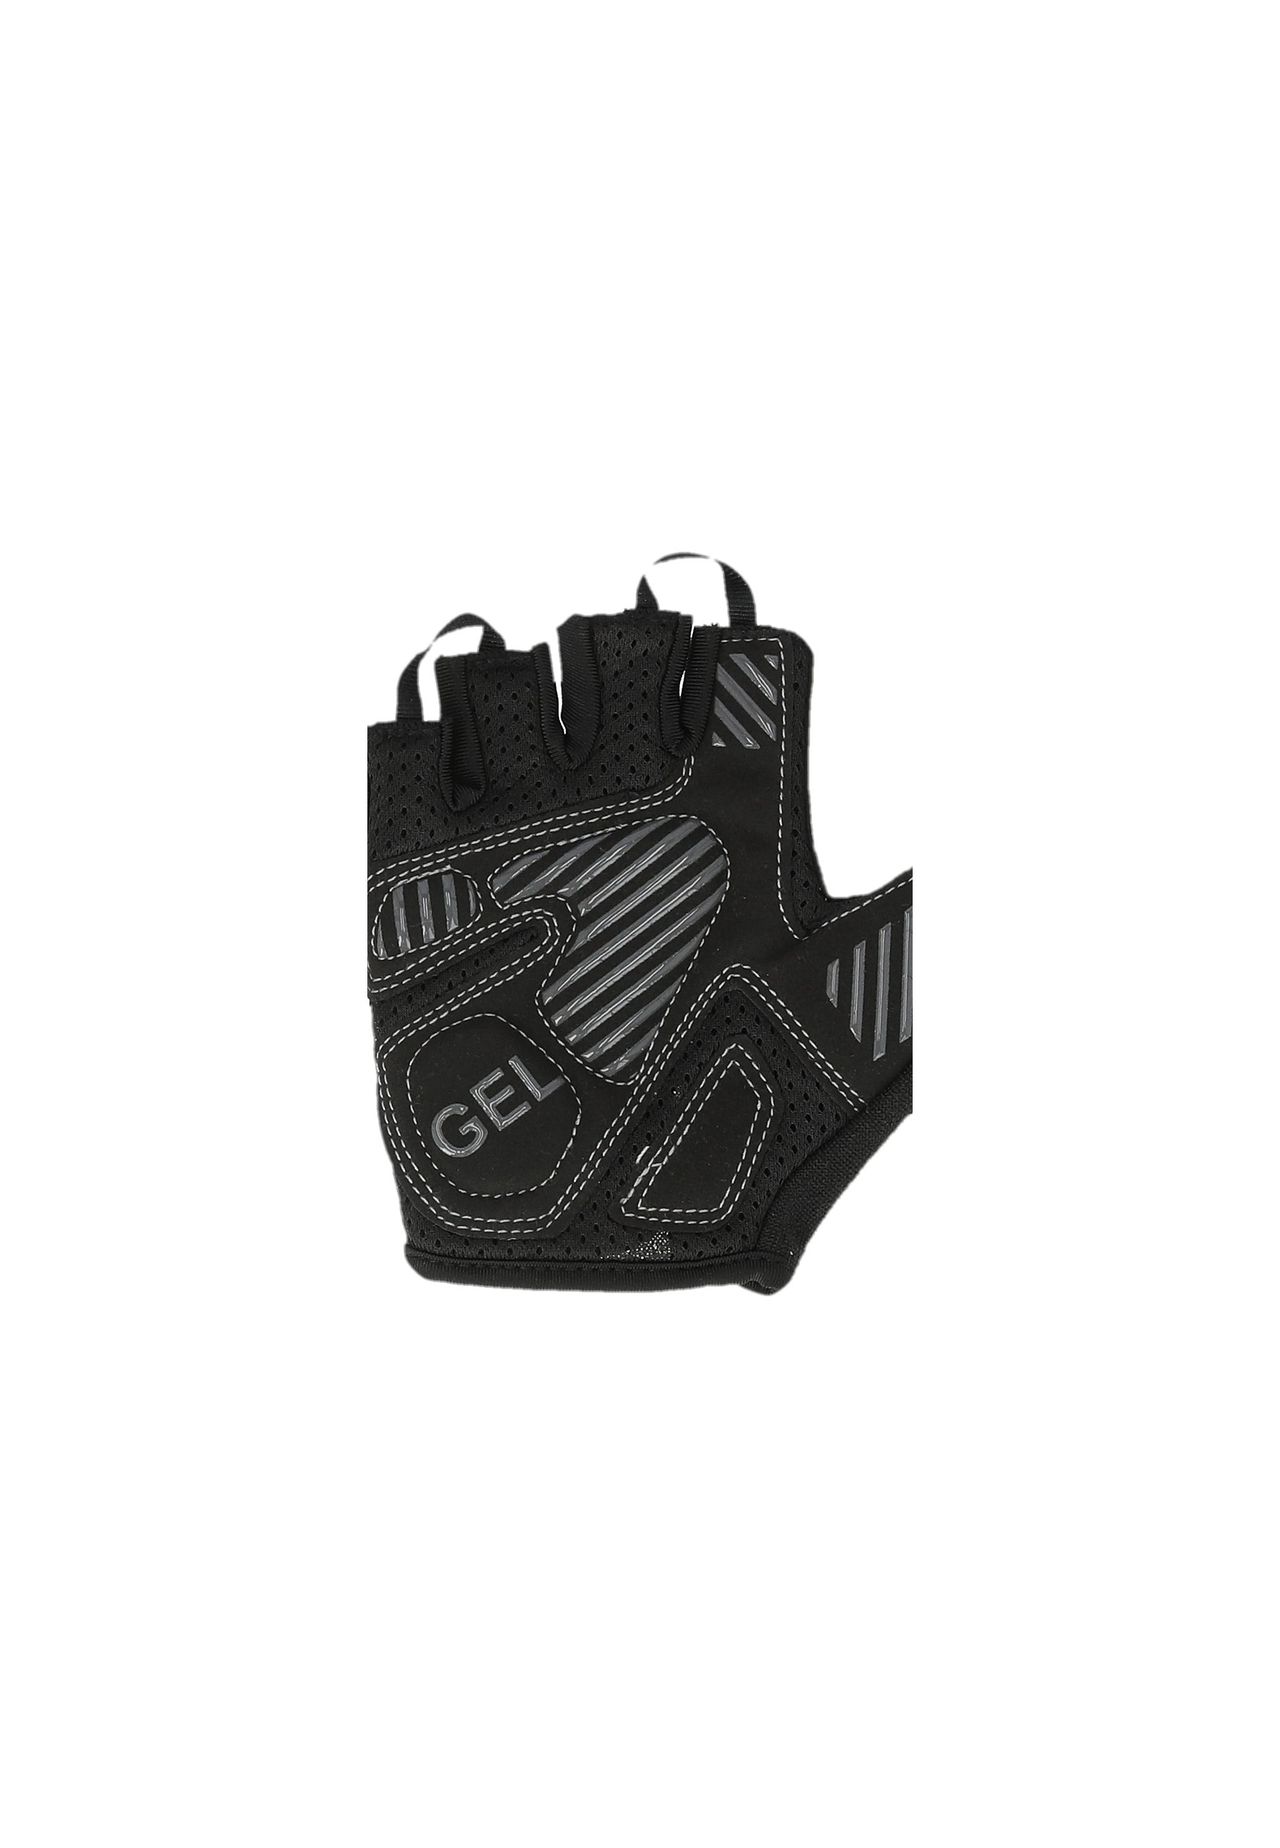 ENDURANCE Gloves Cary mit komfortablen Gel-Einlagen | GALERIA